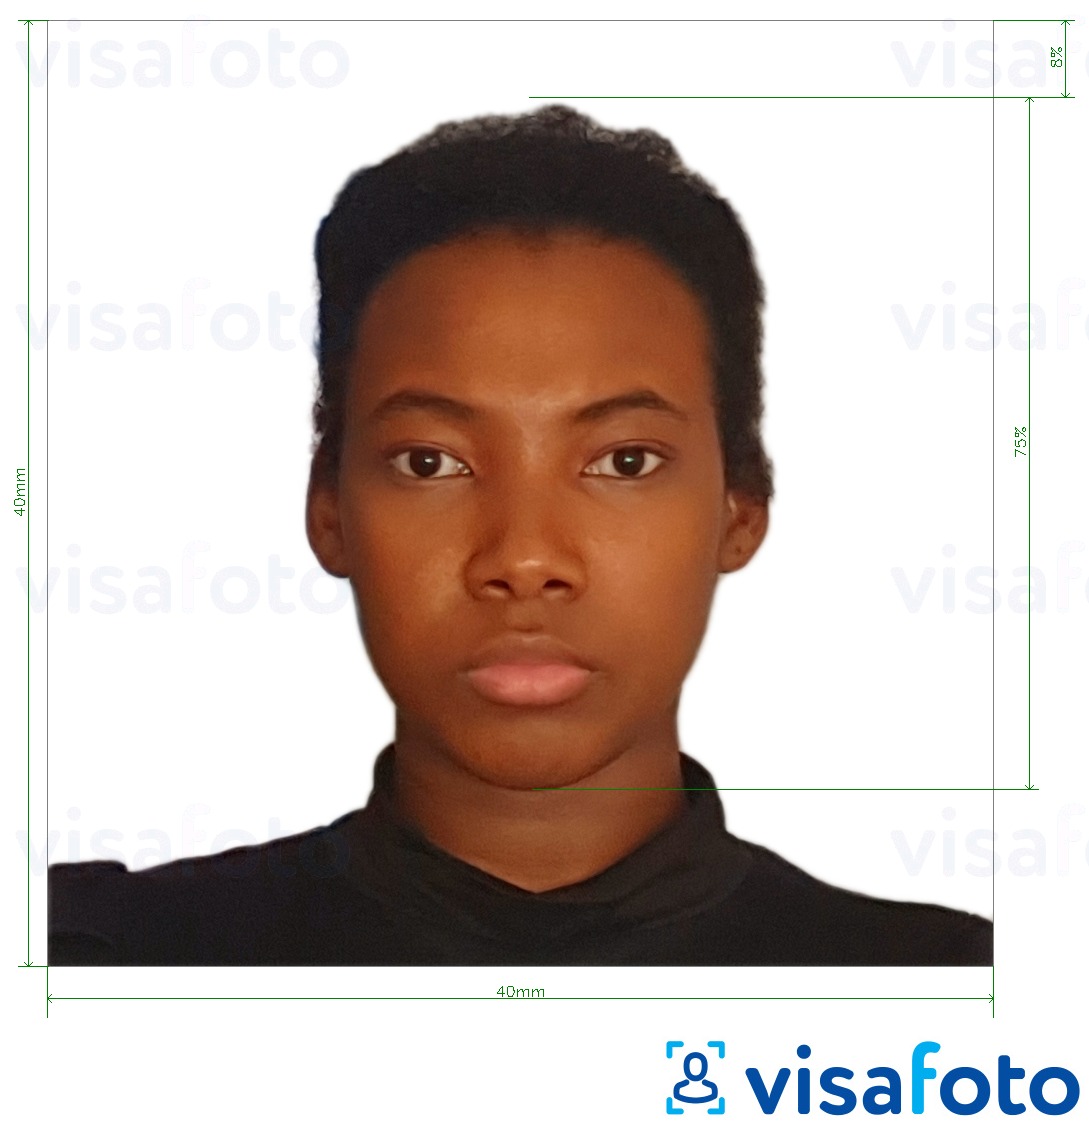 Exemple de foto per a Camara de visa 4x4 cm (40x40 mm) amb la mida exacta especificada